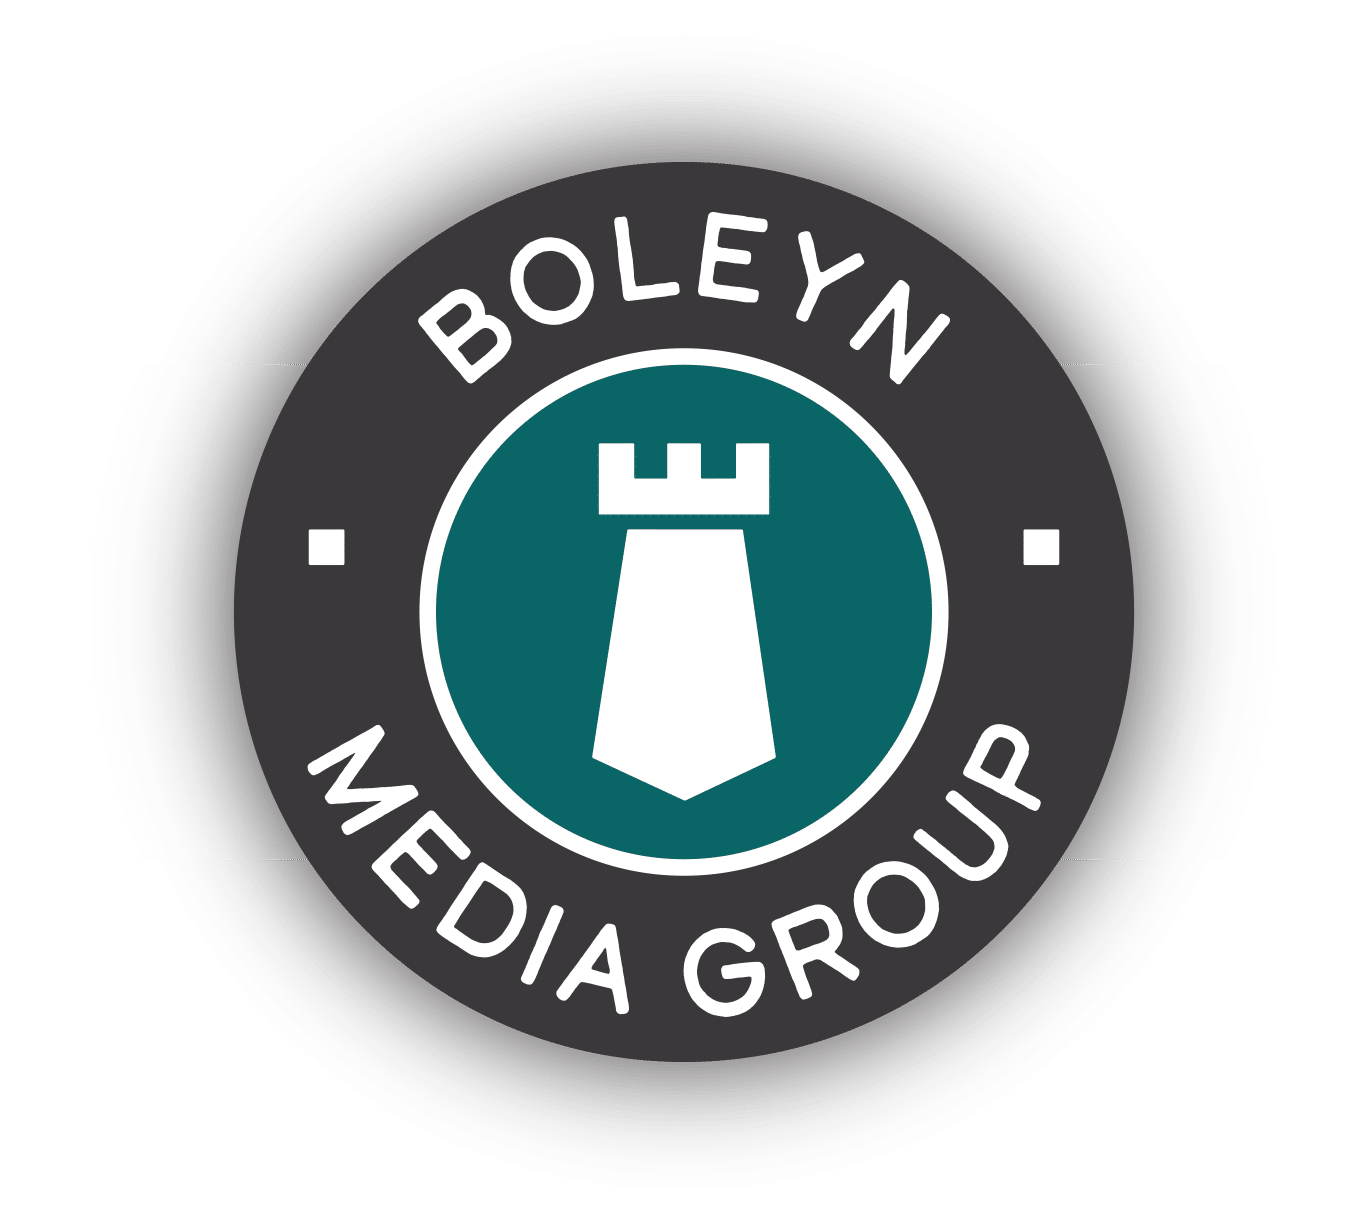 (c) Boleynmedia.com